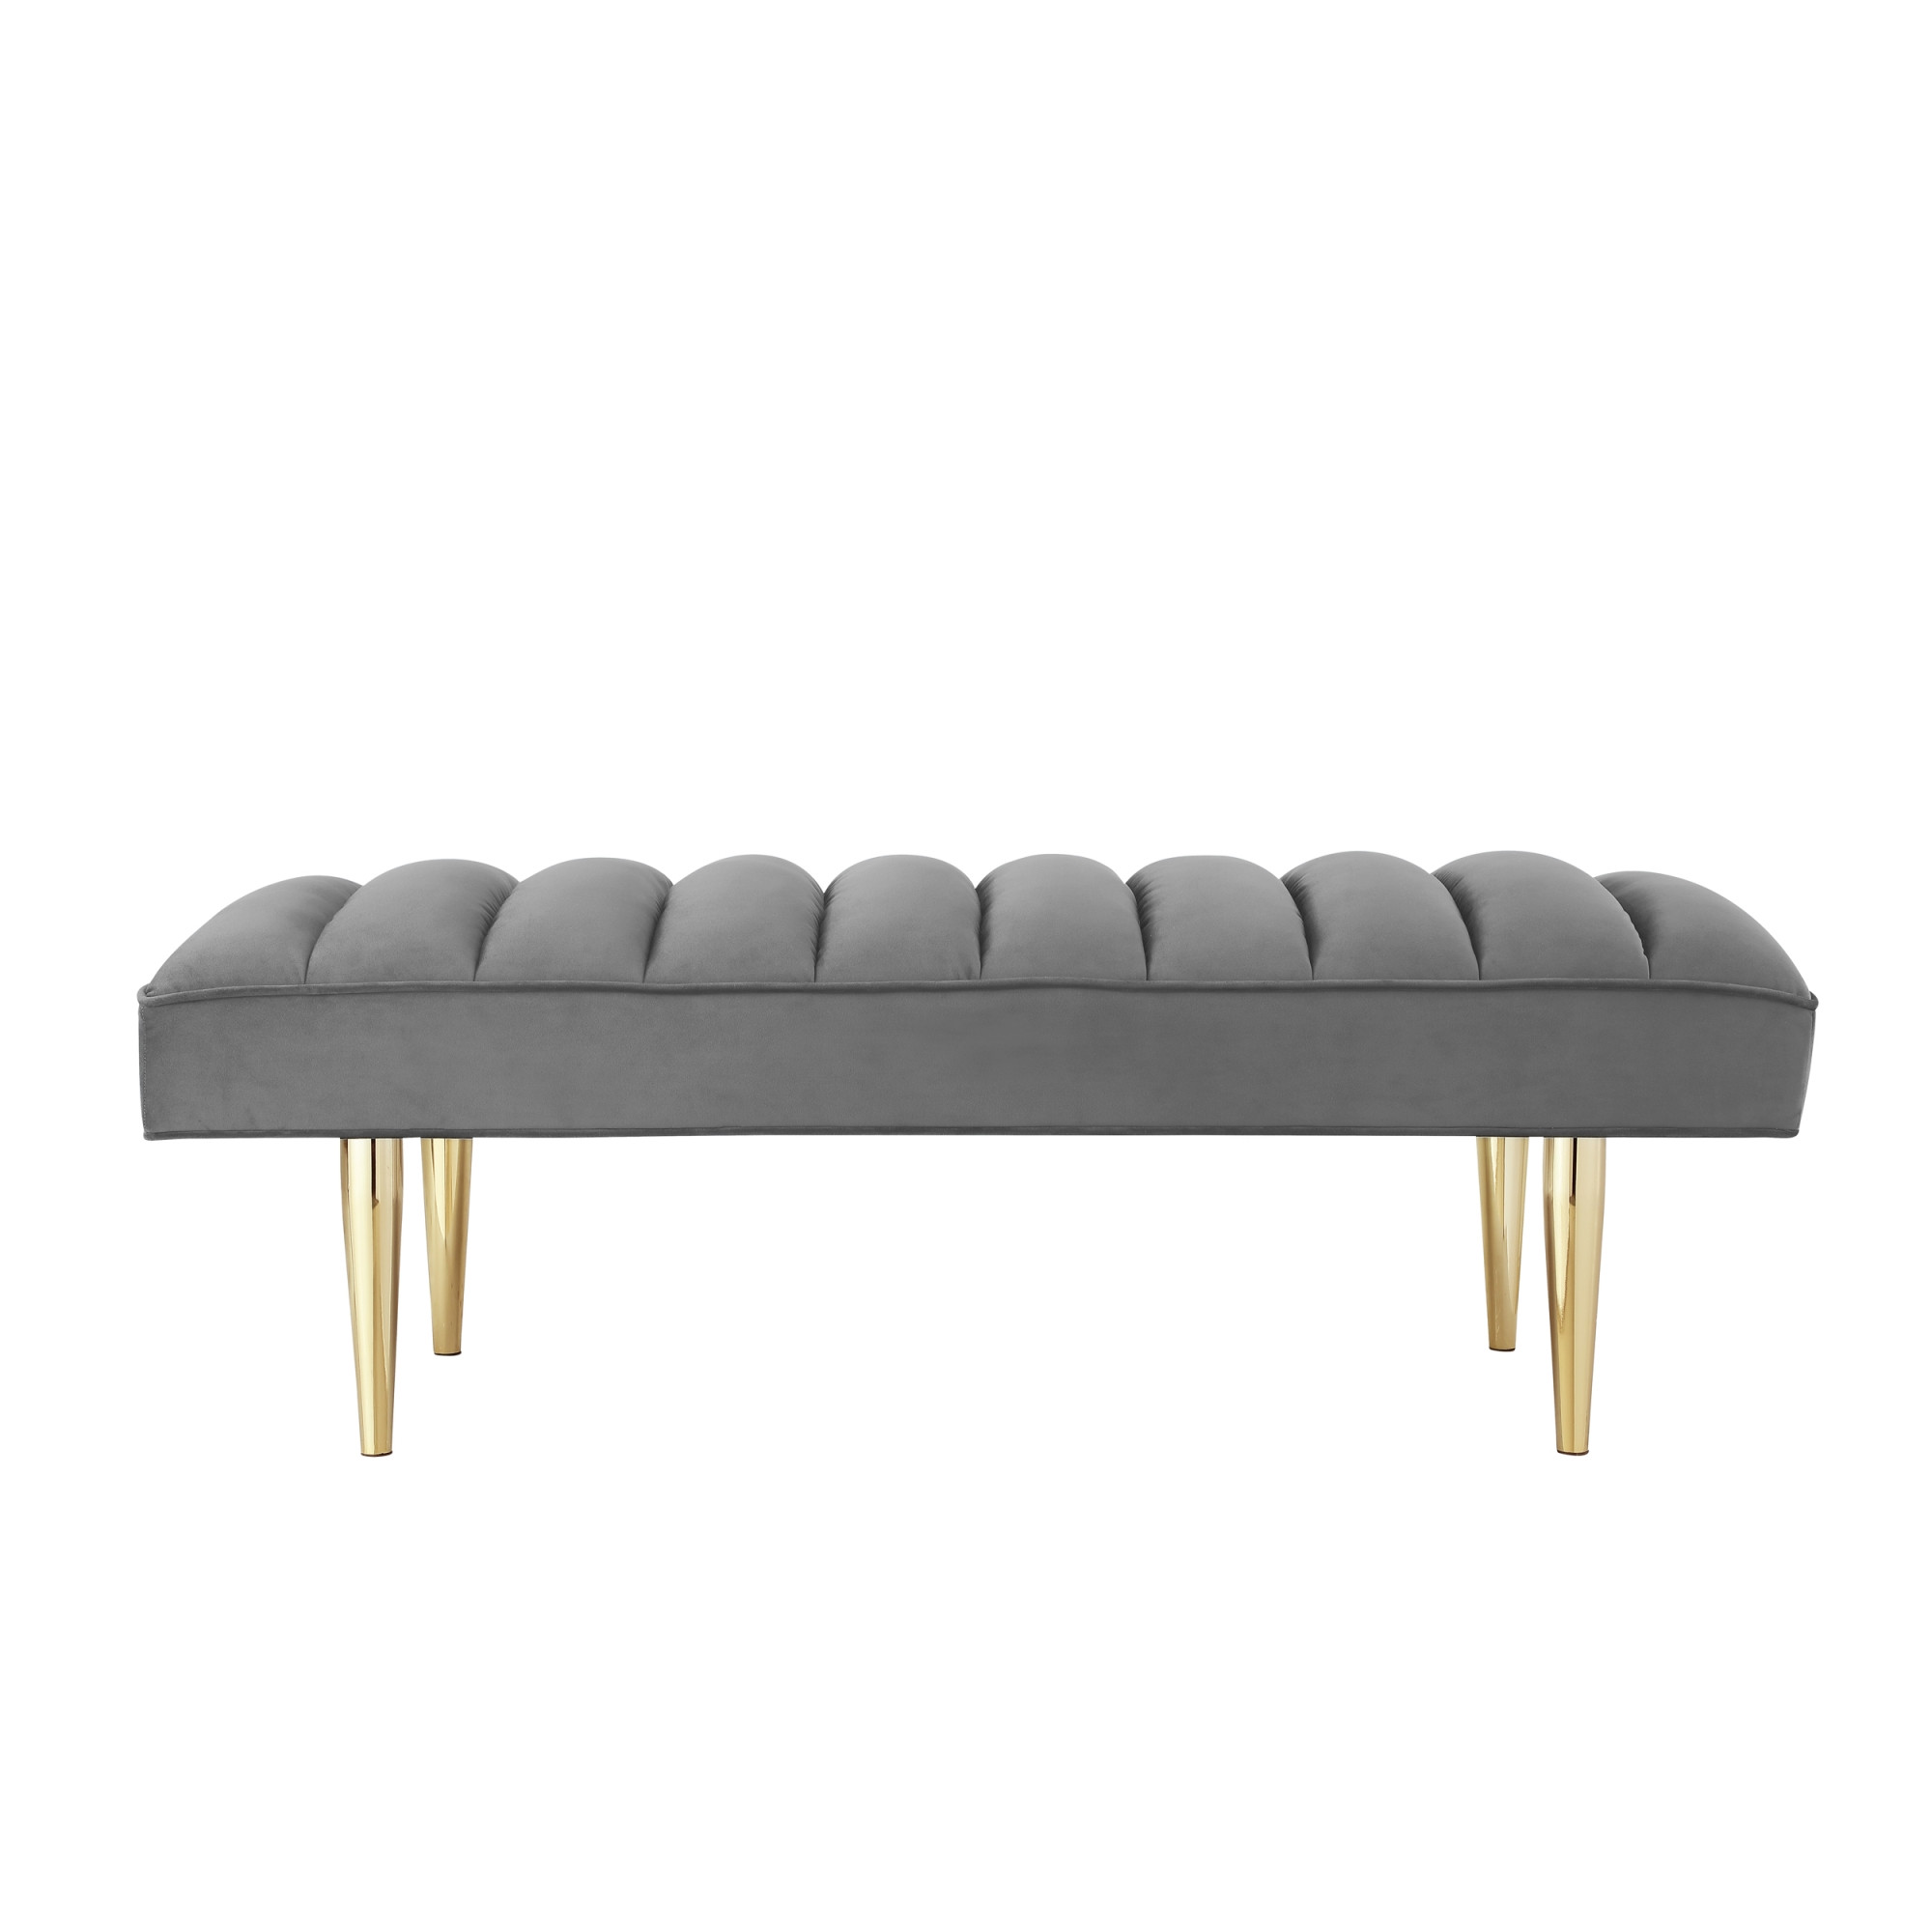 53" Light Gray And Gold Upholstered Velvet Bench-490946-1